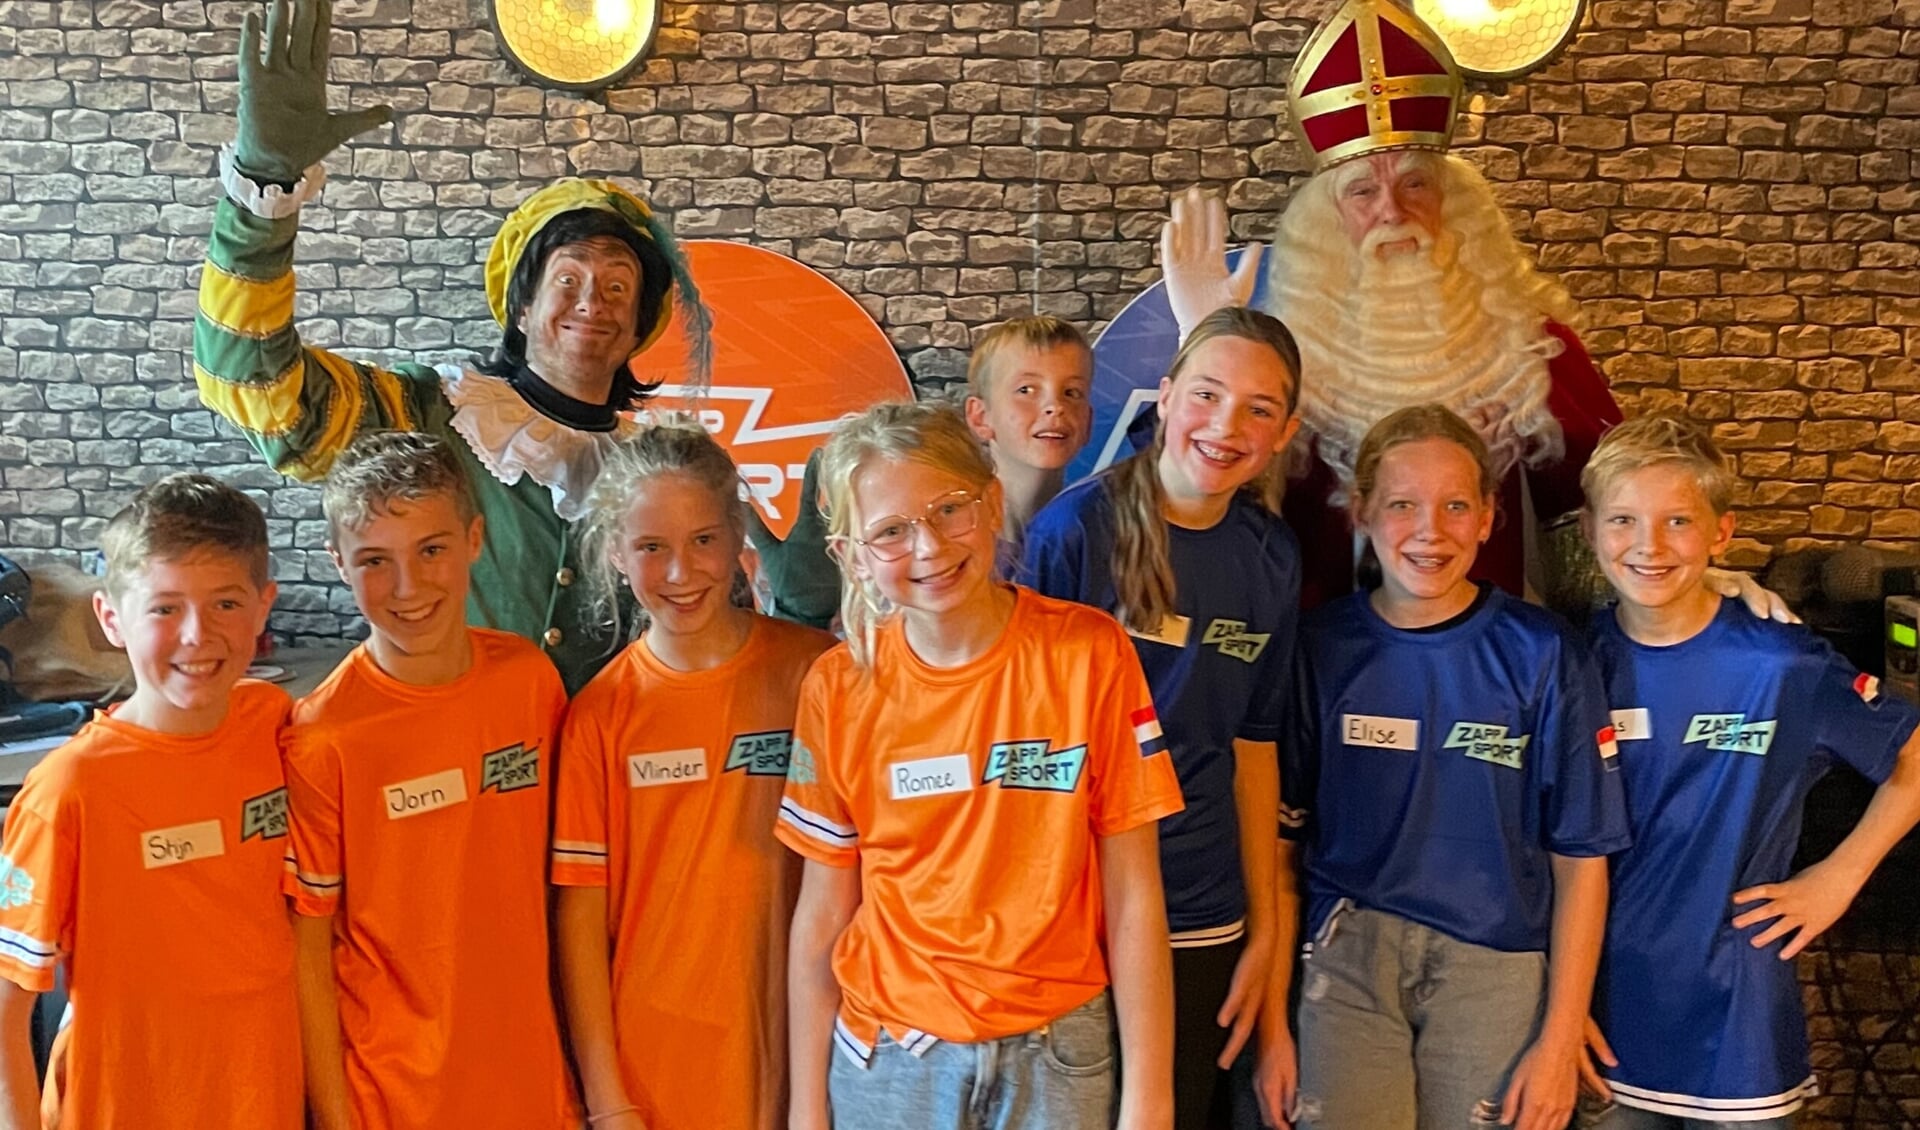 Team Oranje en Team Blauw met Sint en Piet